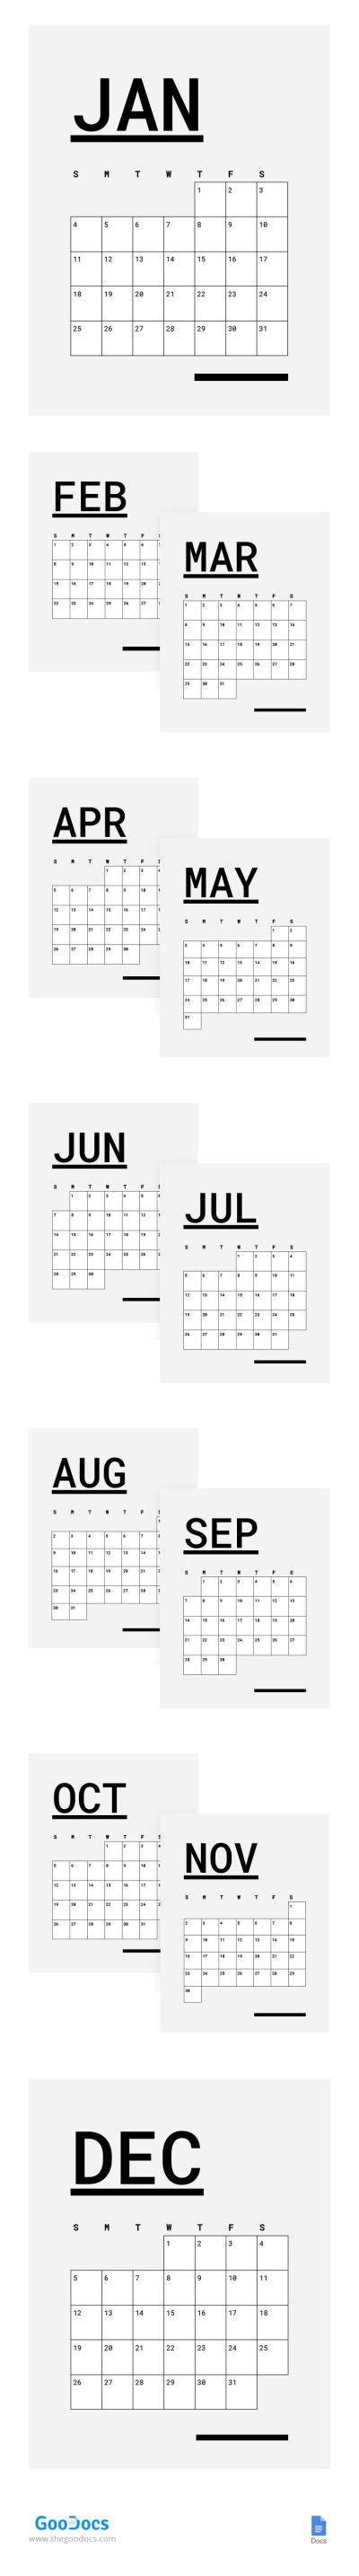 Grey Simple Calendar Template